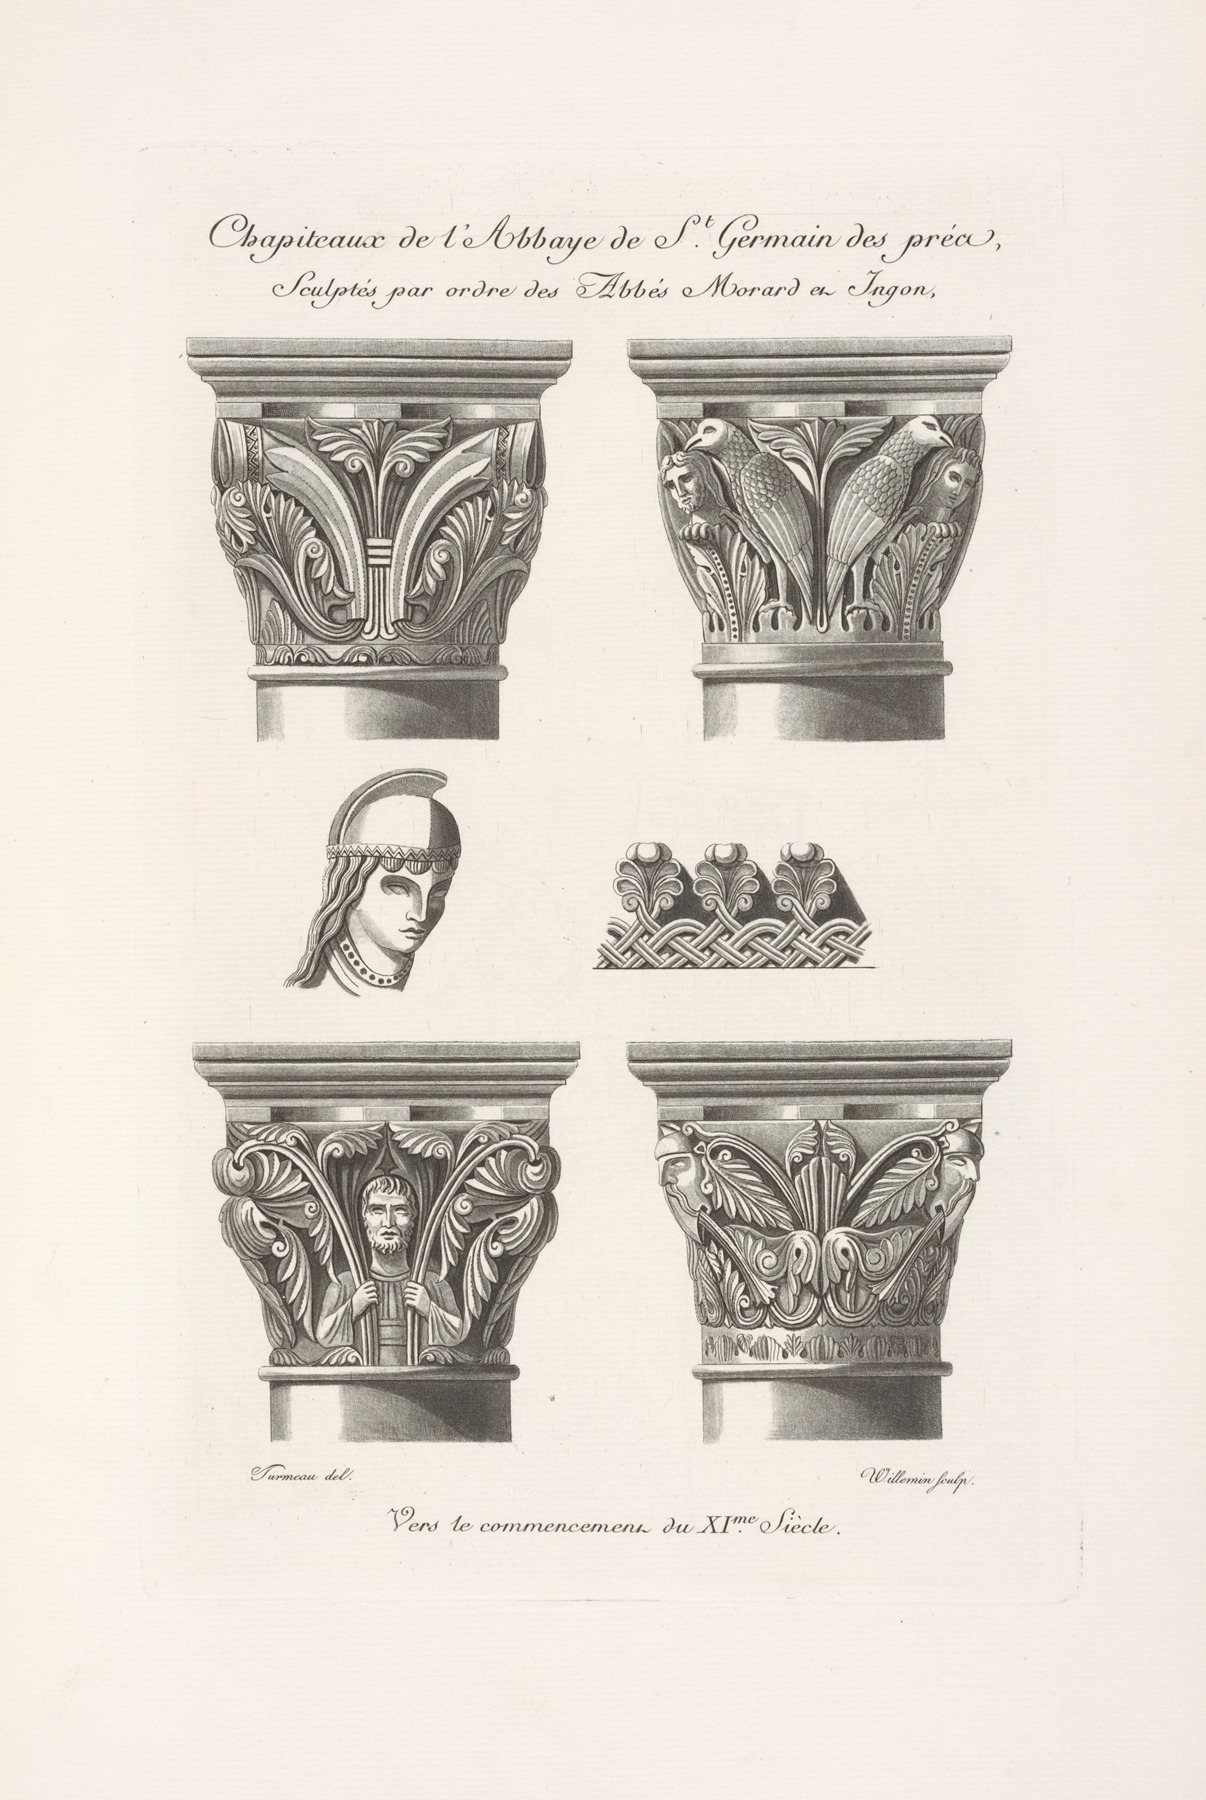 Nicolas Xavier Willemin - Chapiteaux de l’abbaye de St. Germain des près, sculptés par ordre des abbés Morard et Ignon, vers le commencement du XIme. siècle.